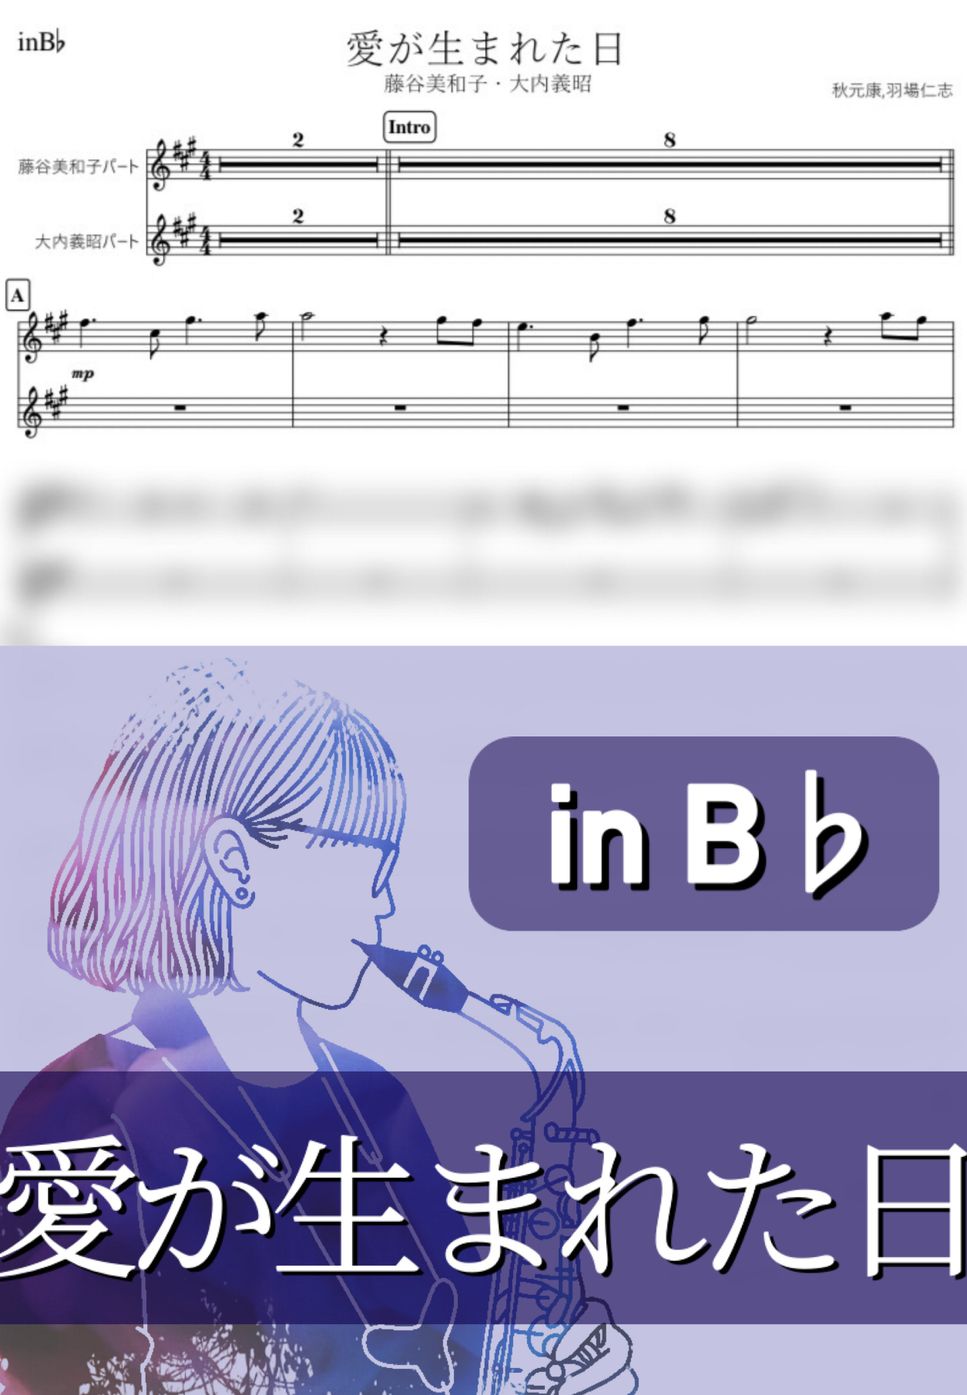 藤谷美和子・大内義昭 - 愛が生まれた日 (B♭) by kanamusic